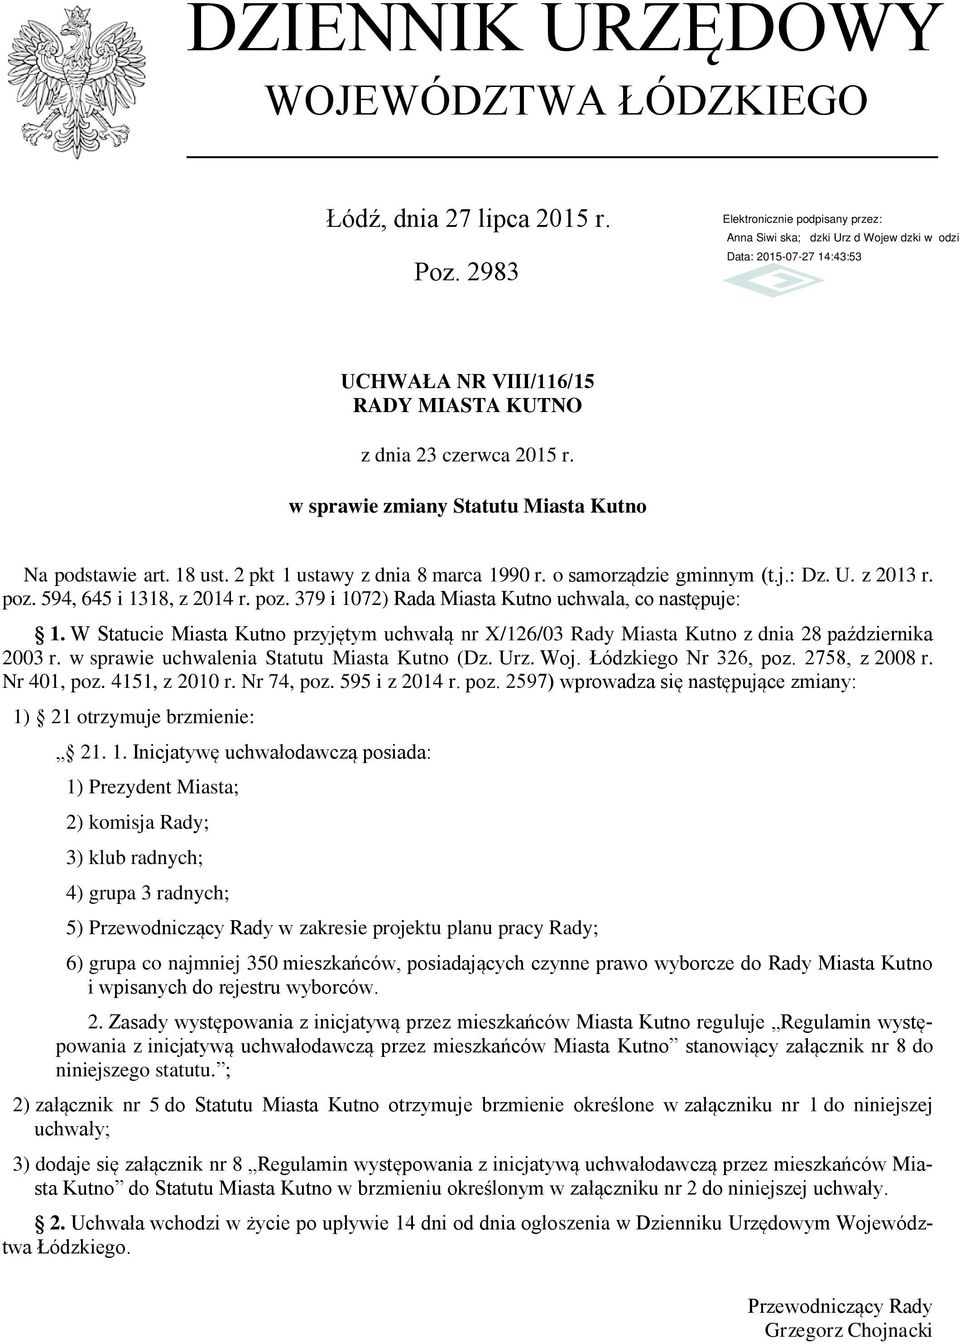 W Statucie Miasta Kutno przyjętym uchwałą nr X/126/03 Rady Miasta Kutno z dnia 28 października 2003 r. w sprawie uchwalenia Statutu Miasta Kutno (Dz. Urz. Woj. Łódzkiego Nr 326, poz. 2758, z 2008 r.